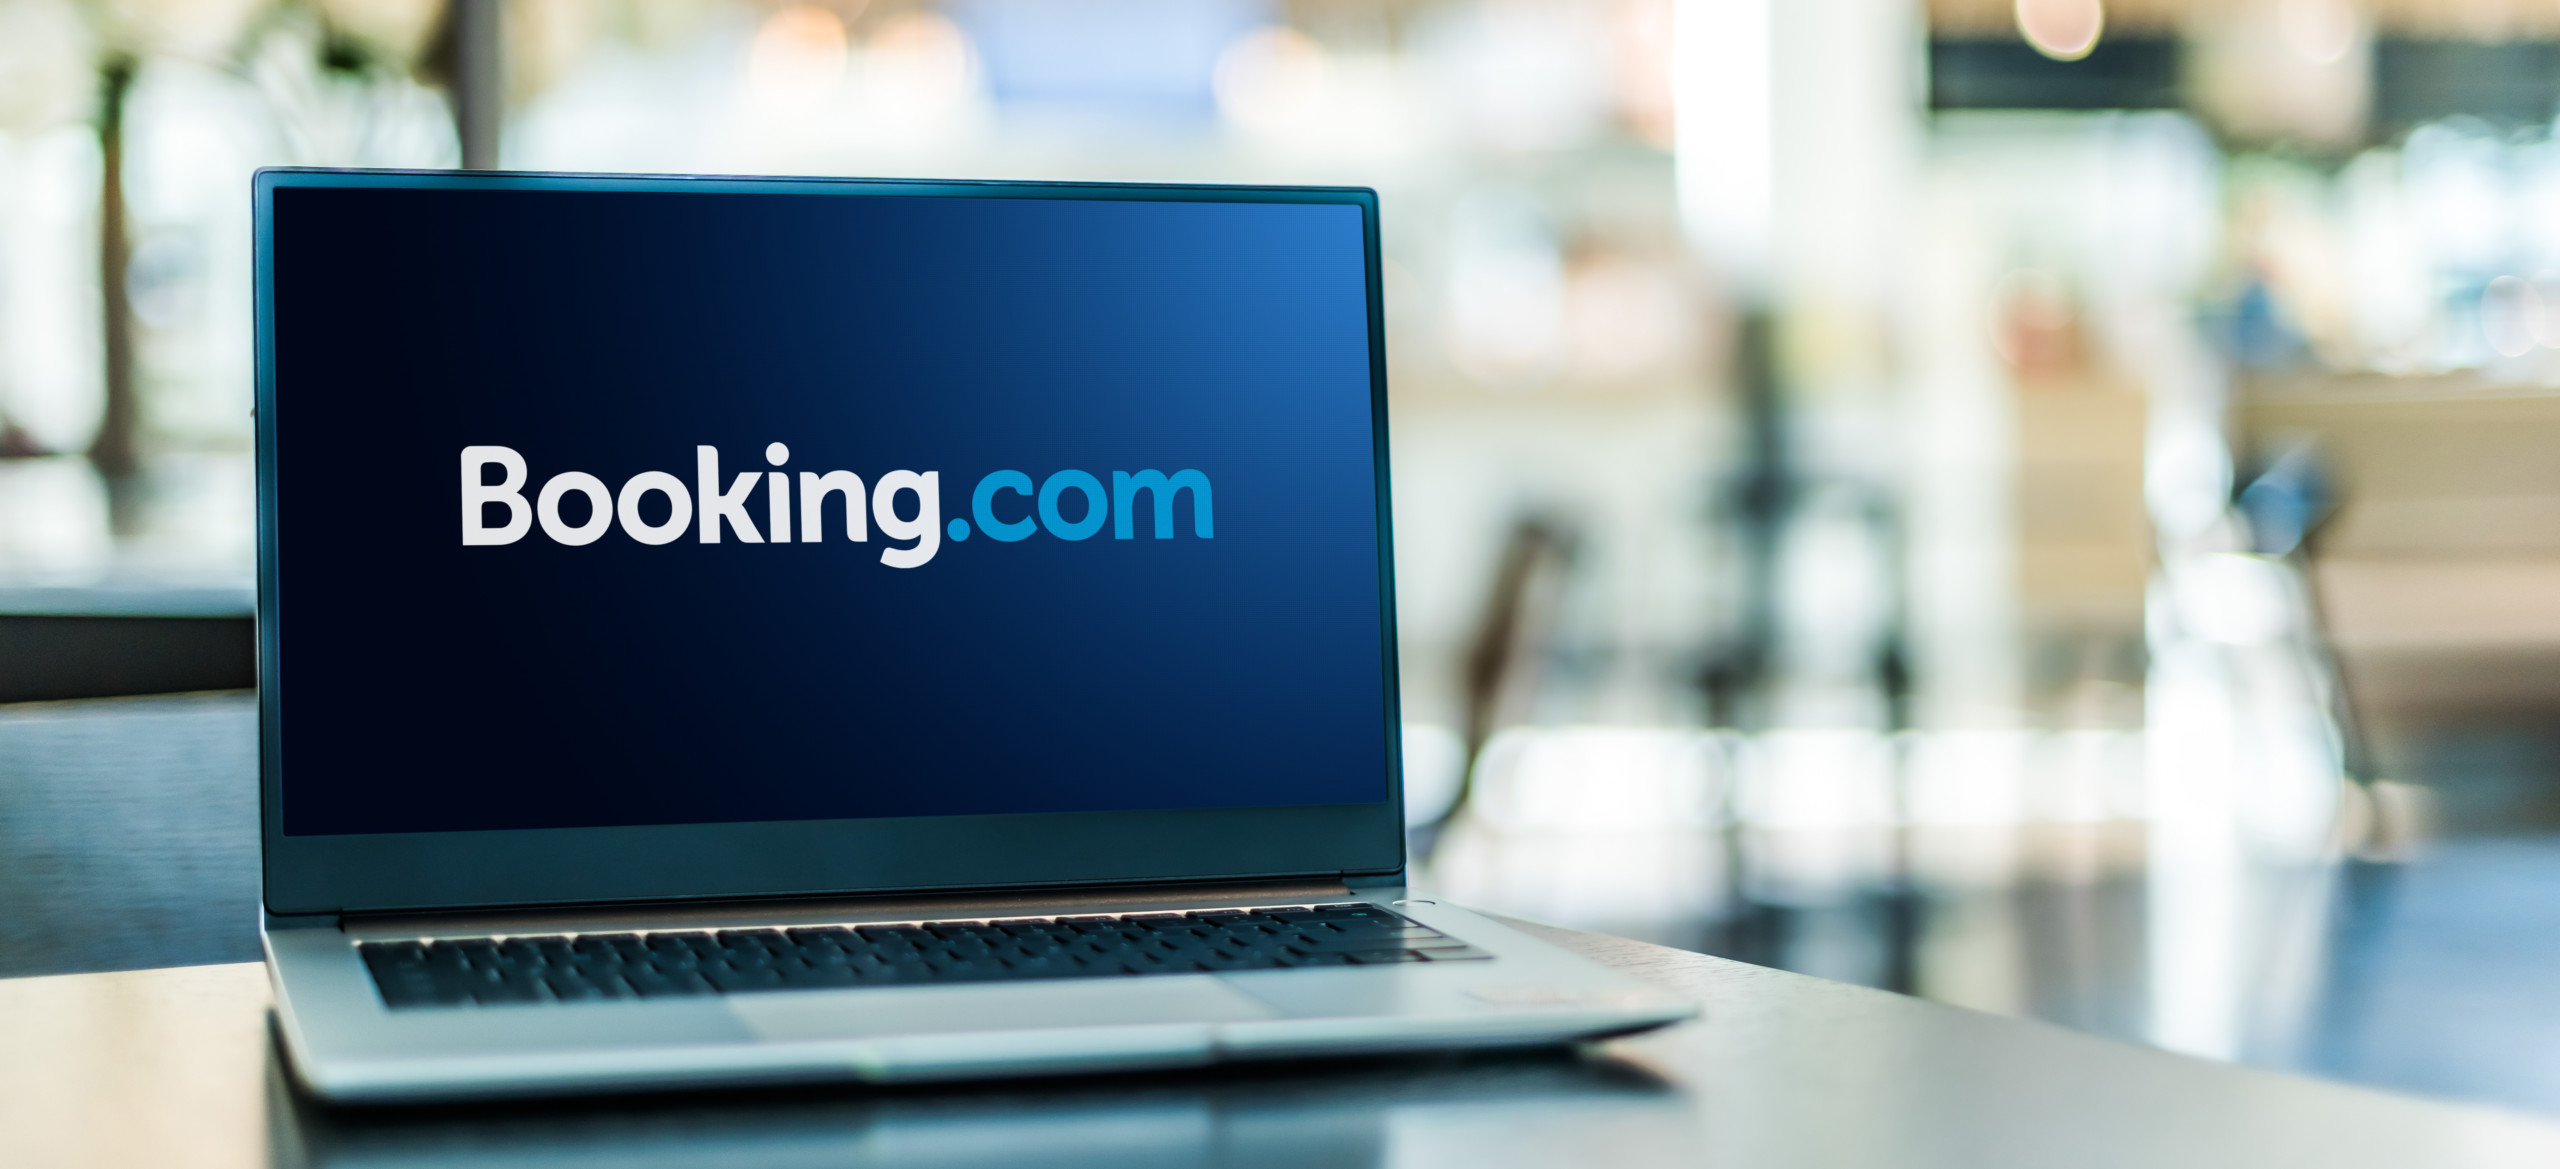 Booking.com erwartet Rekordsommersaison - Aktie legt 10 % zu